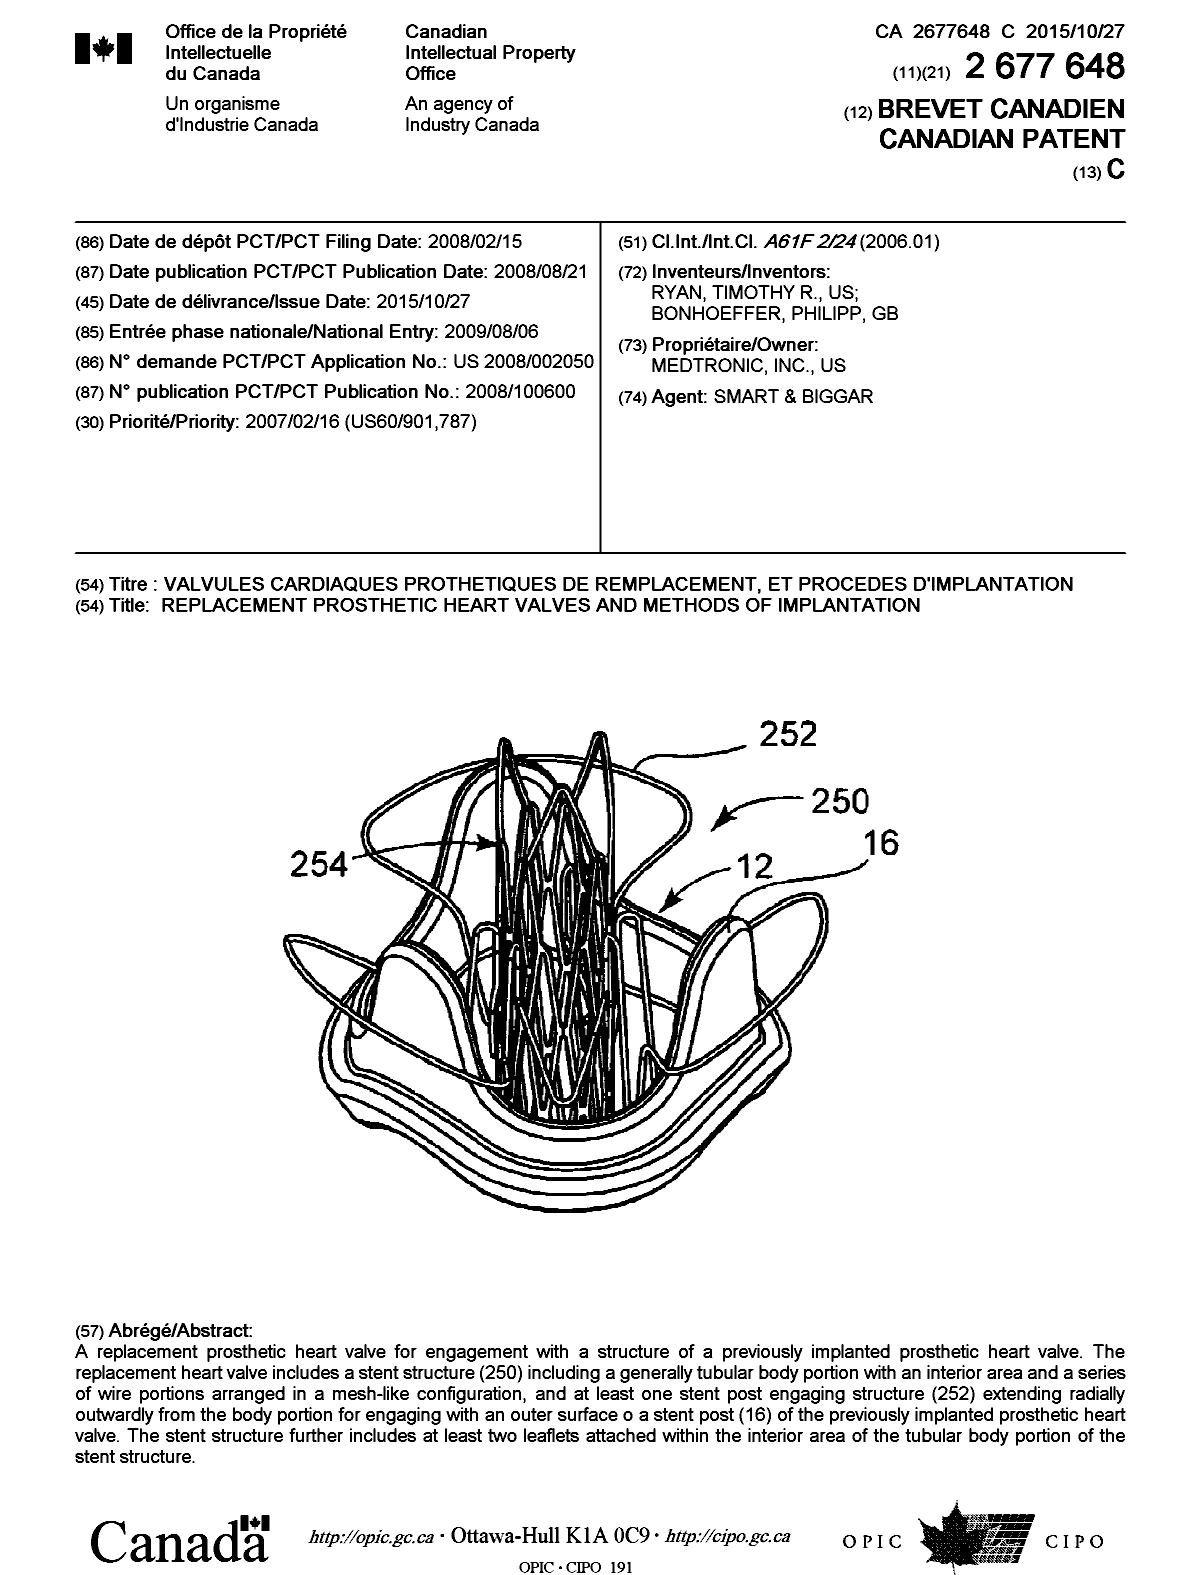 Document de brevet canadien 2677648. Page couverture 20141207. Image 1 de 1